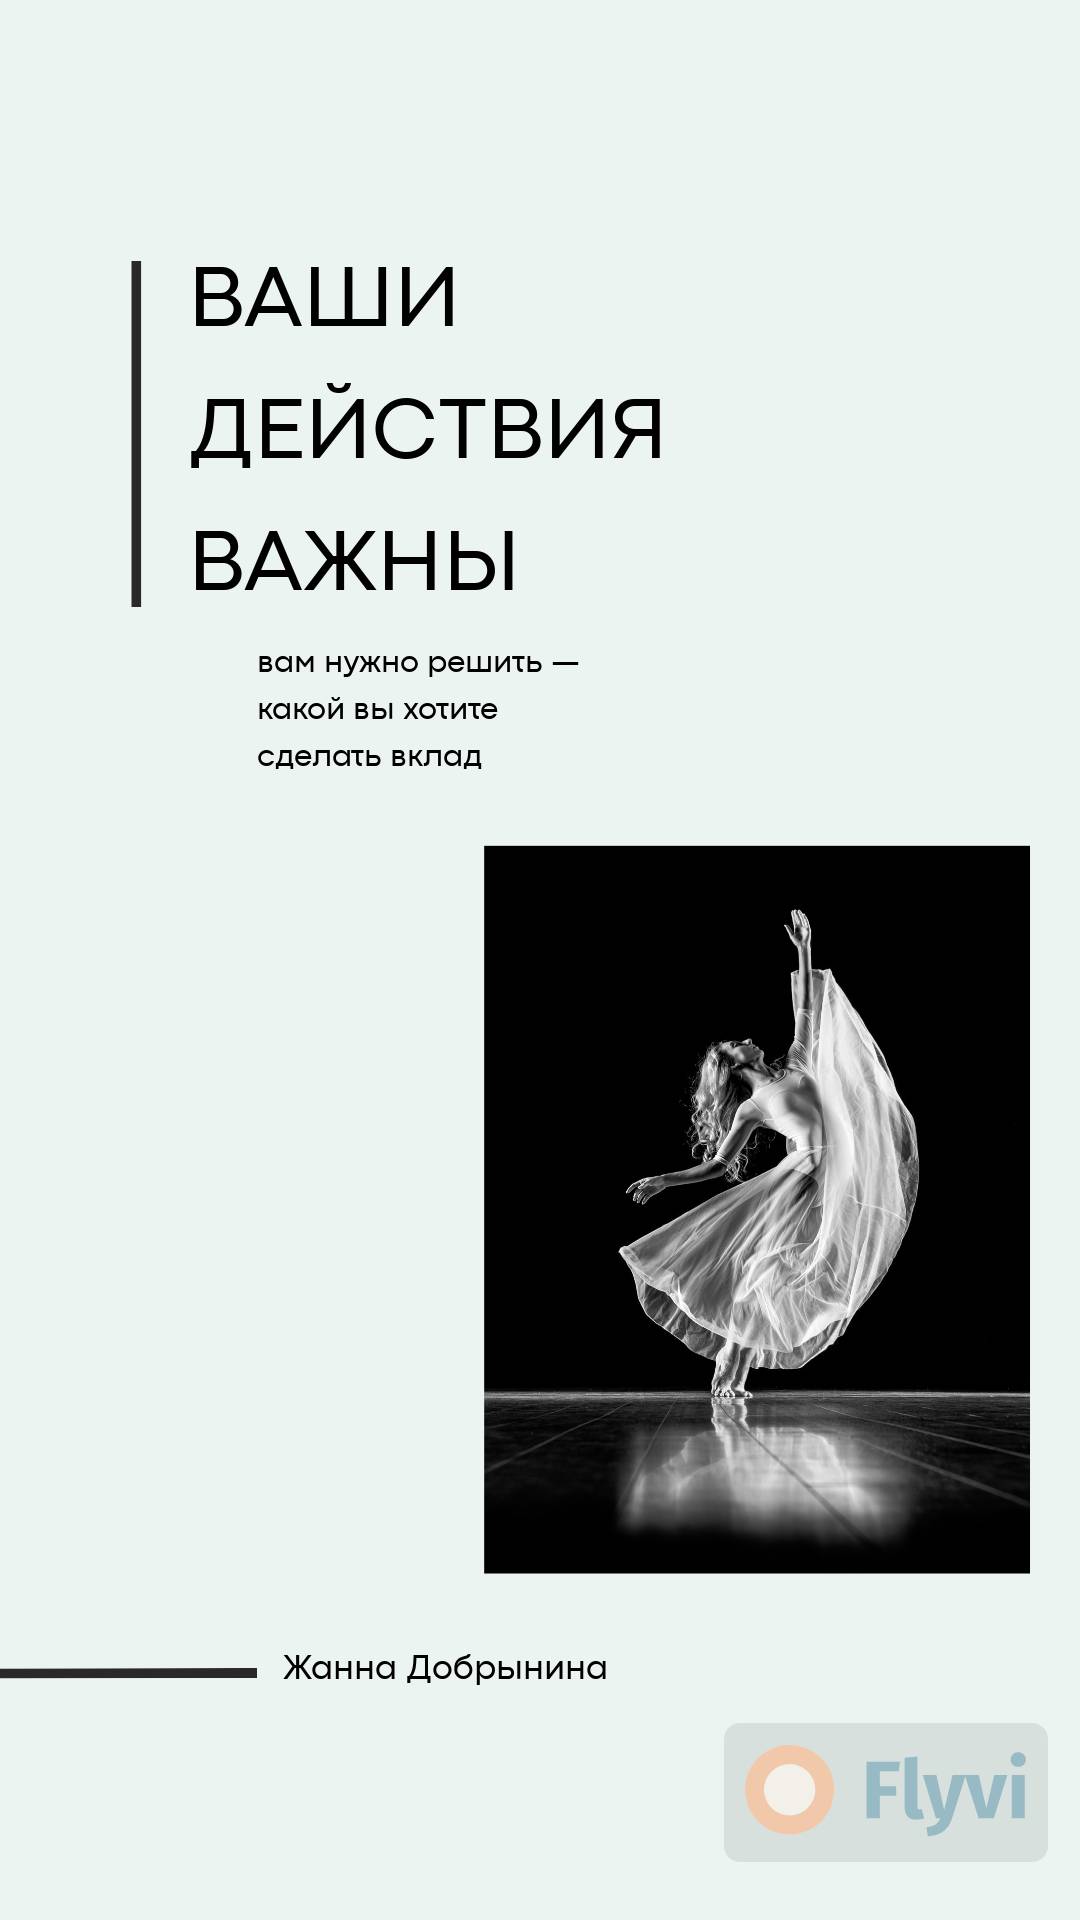 Лаконичная сторис с черно белым фото балерины в прозрачном белом платье